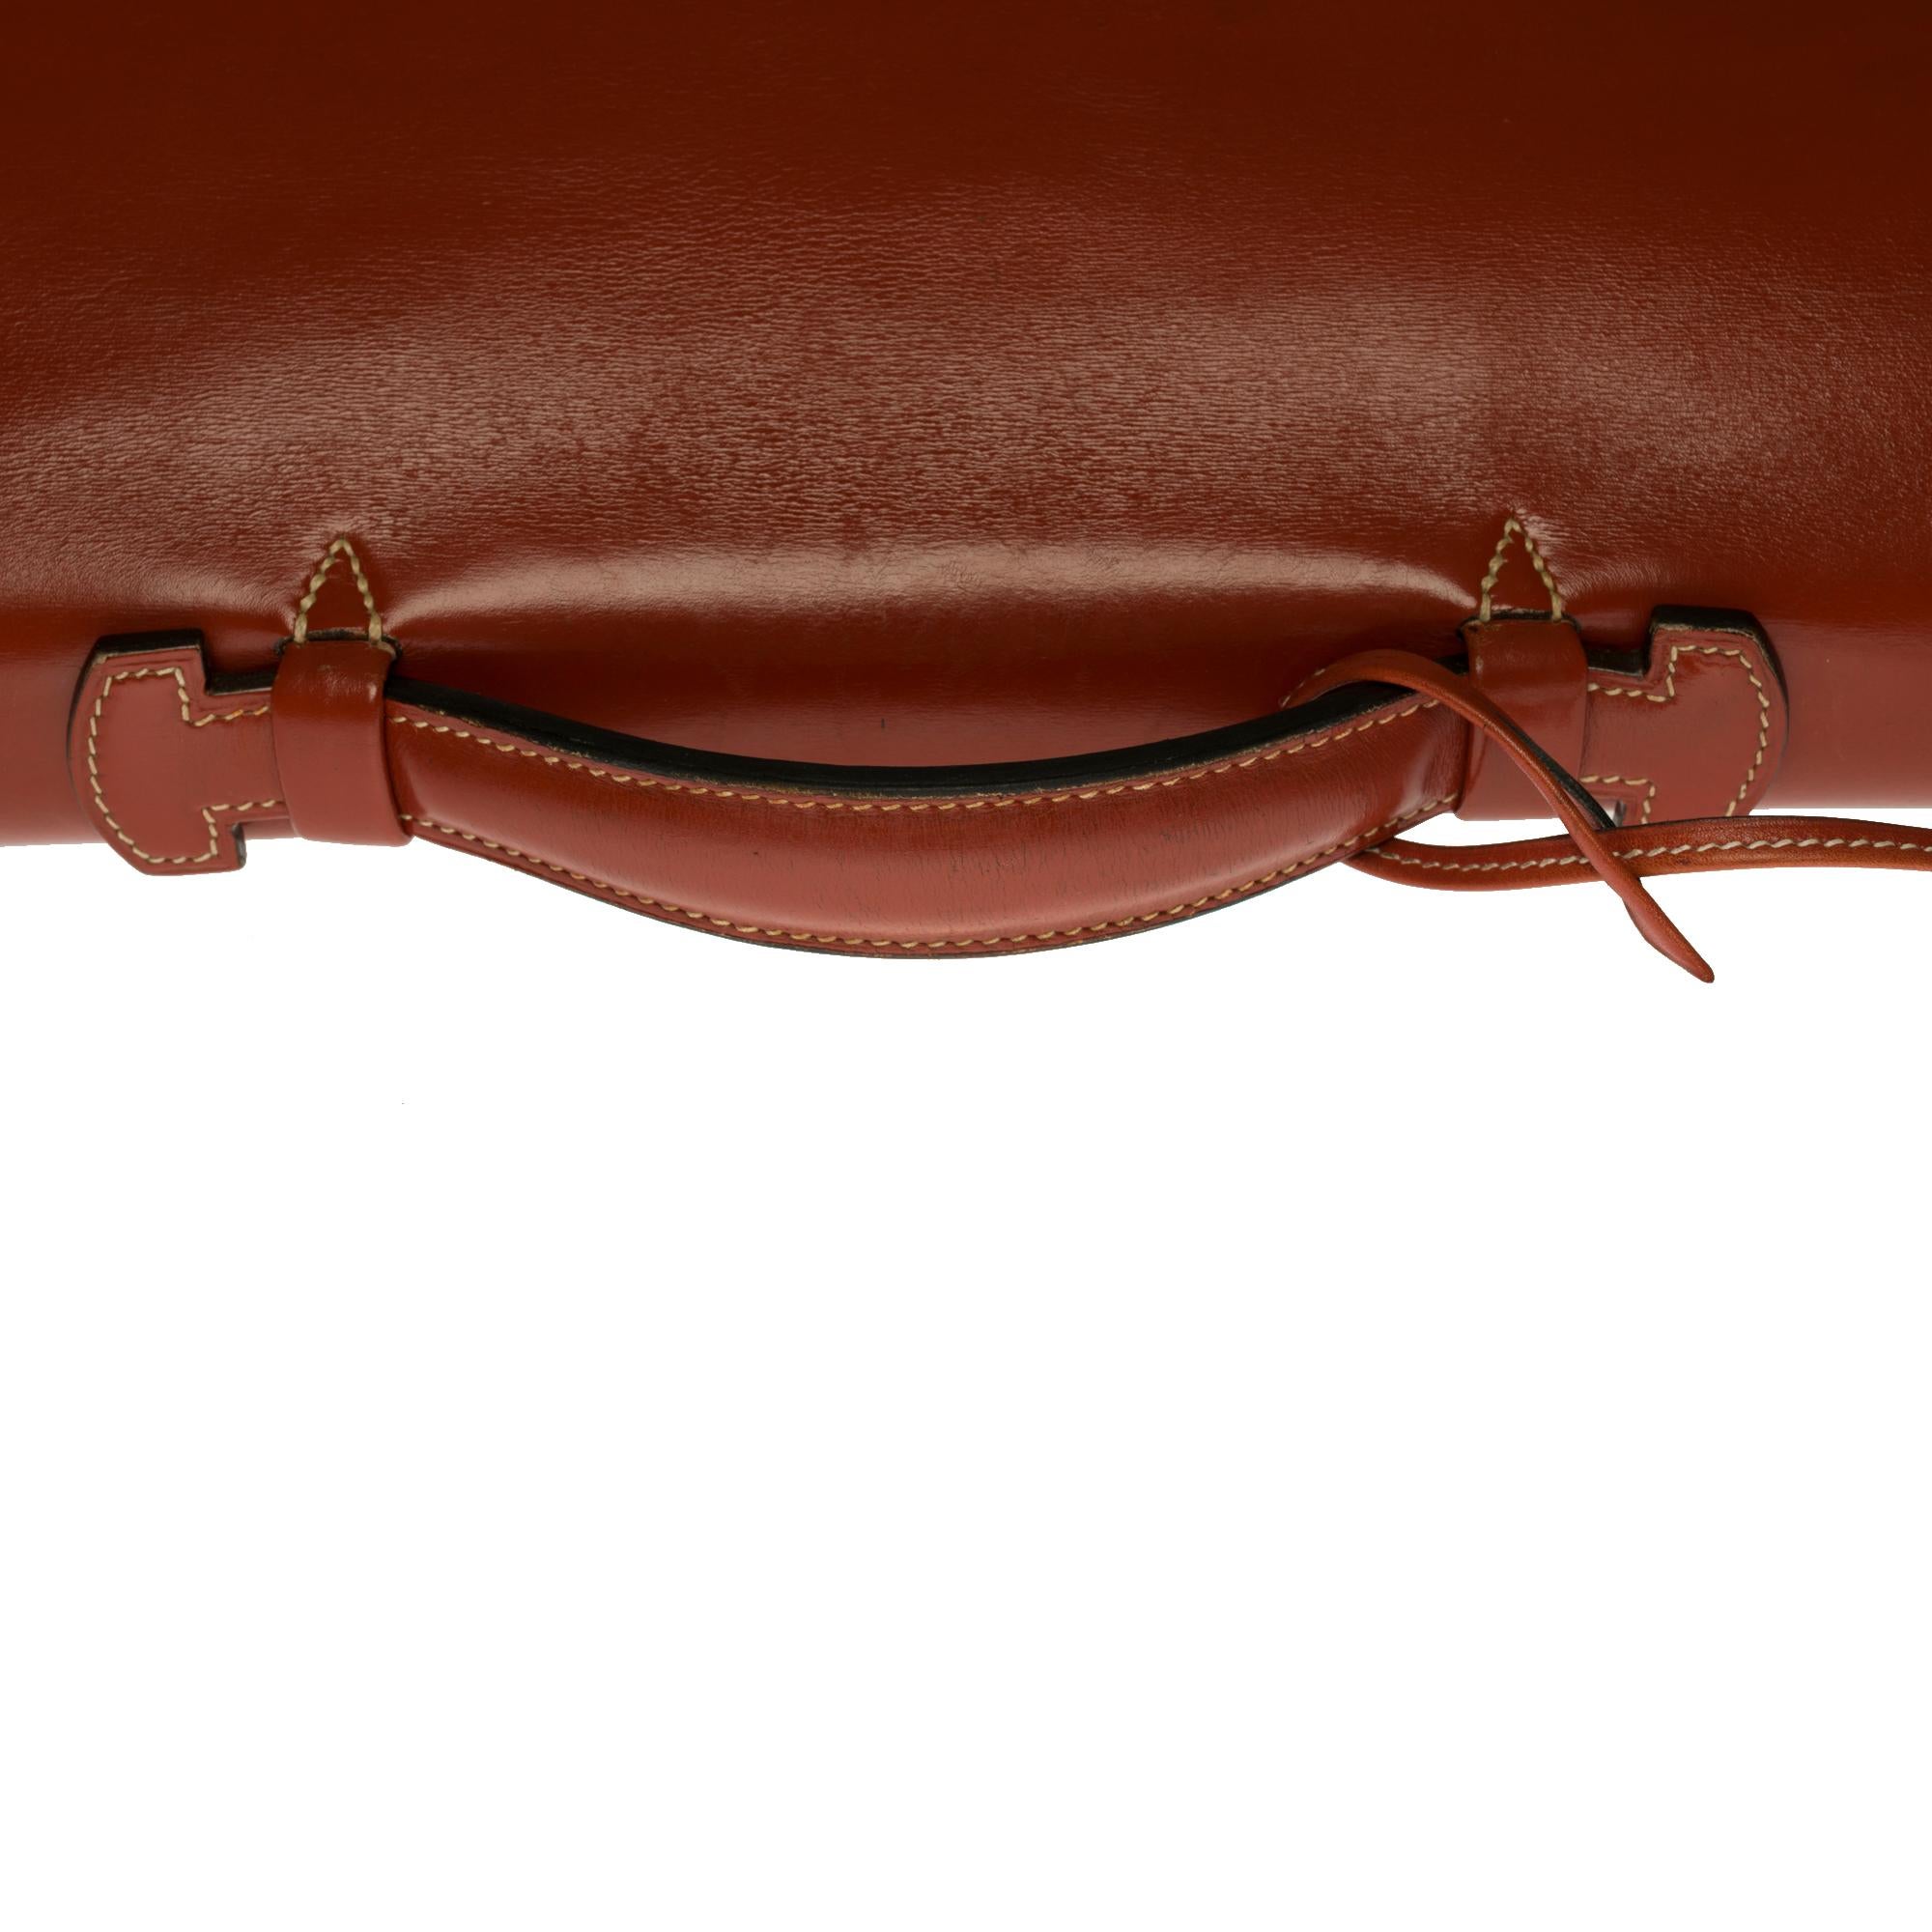 Men's Rare Hermès Sac à dépêches briefcase in Rouge brique calf box leather, GHW